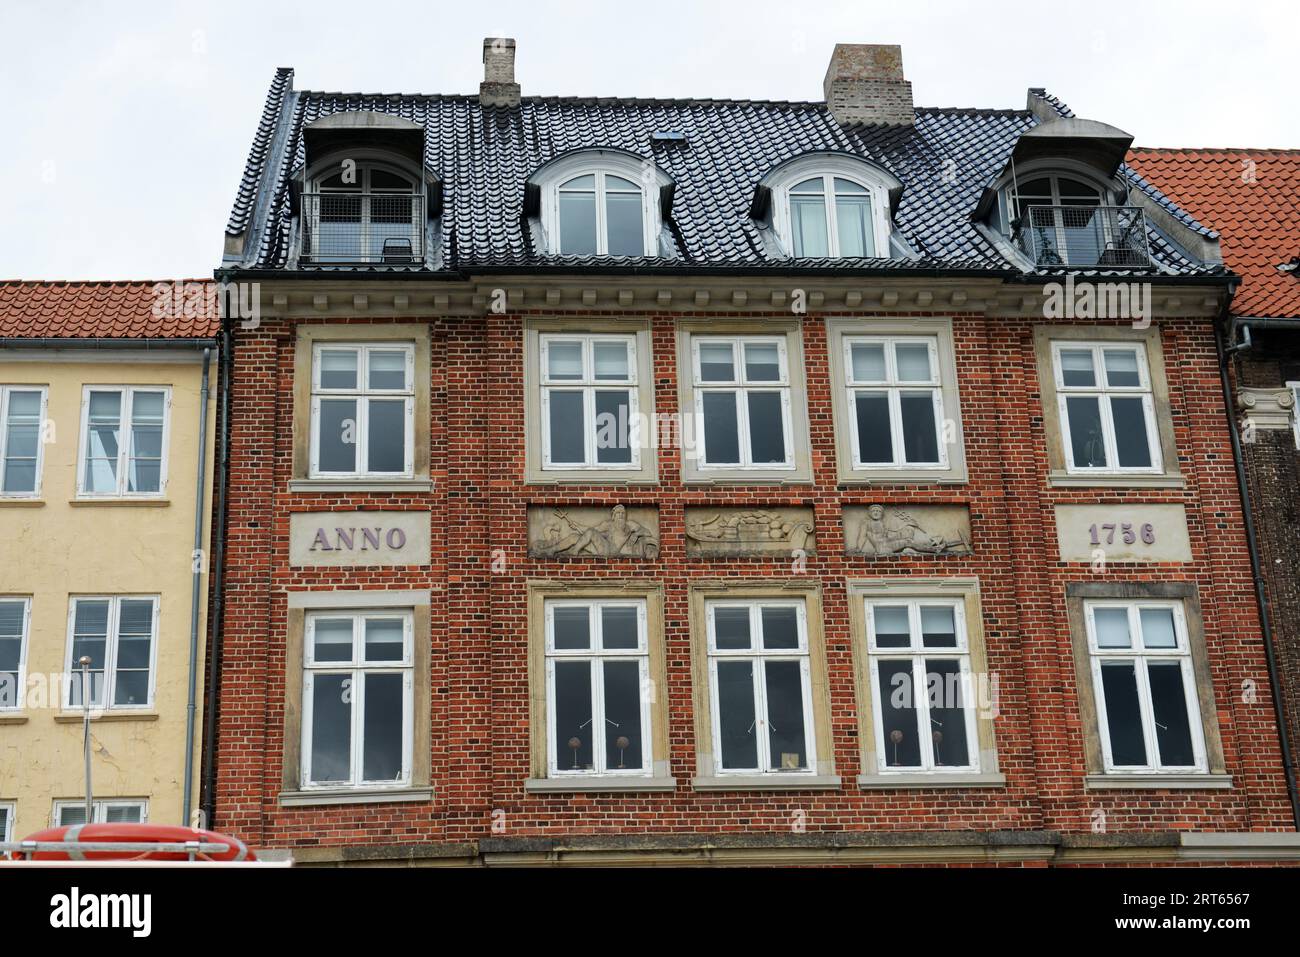 An old building on Nyhavn 63 in Copenhagen, Denmark. Stock Photo